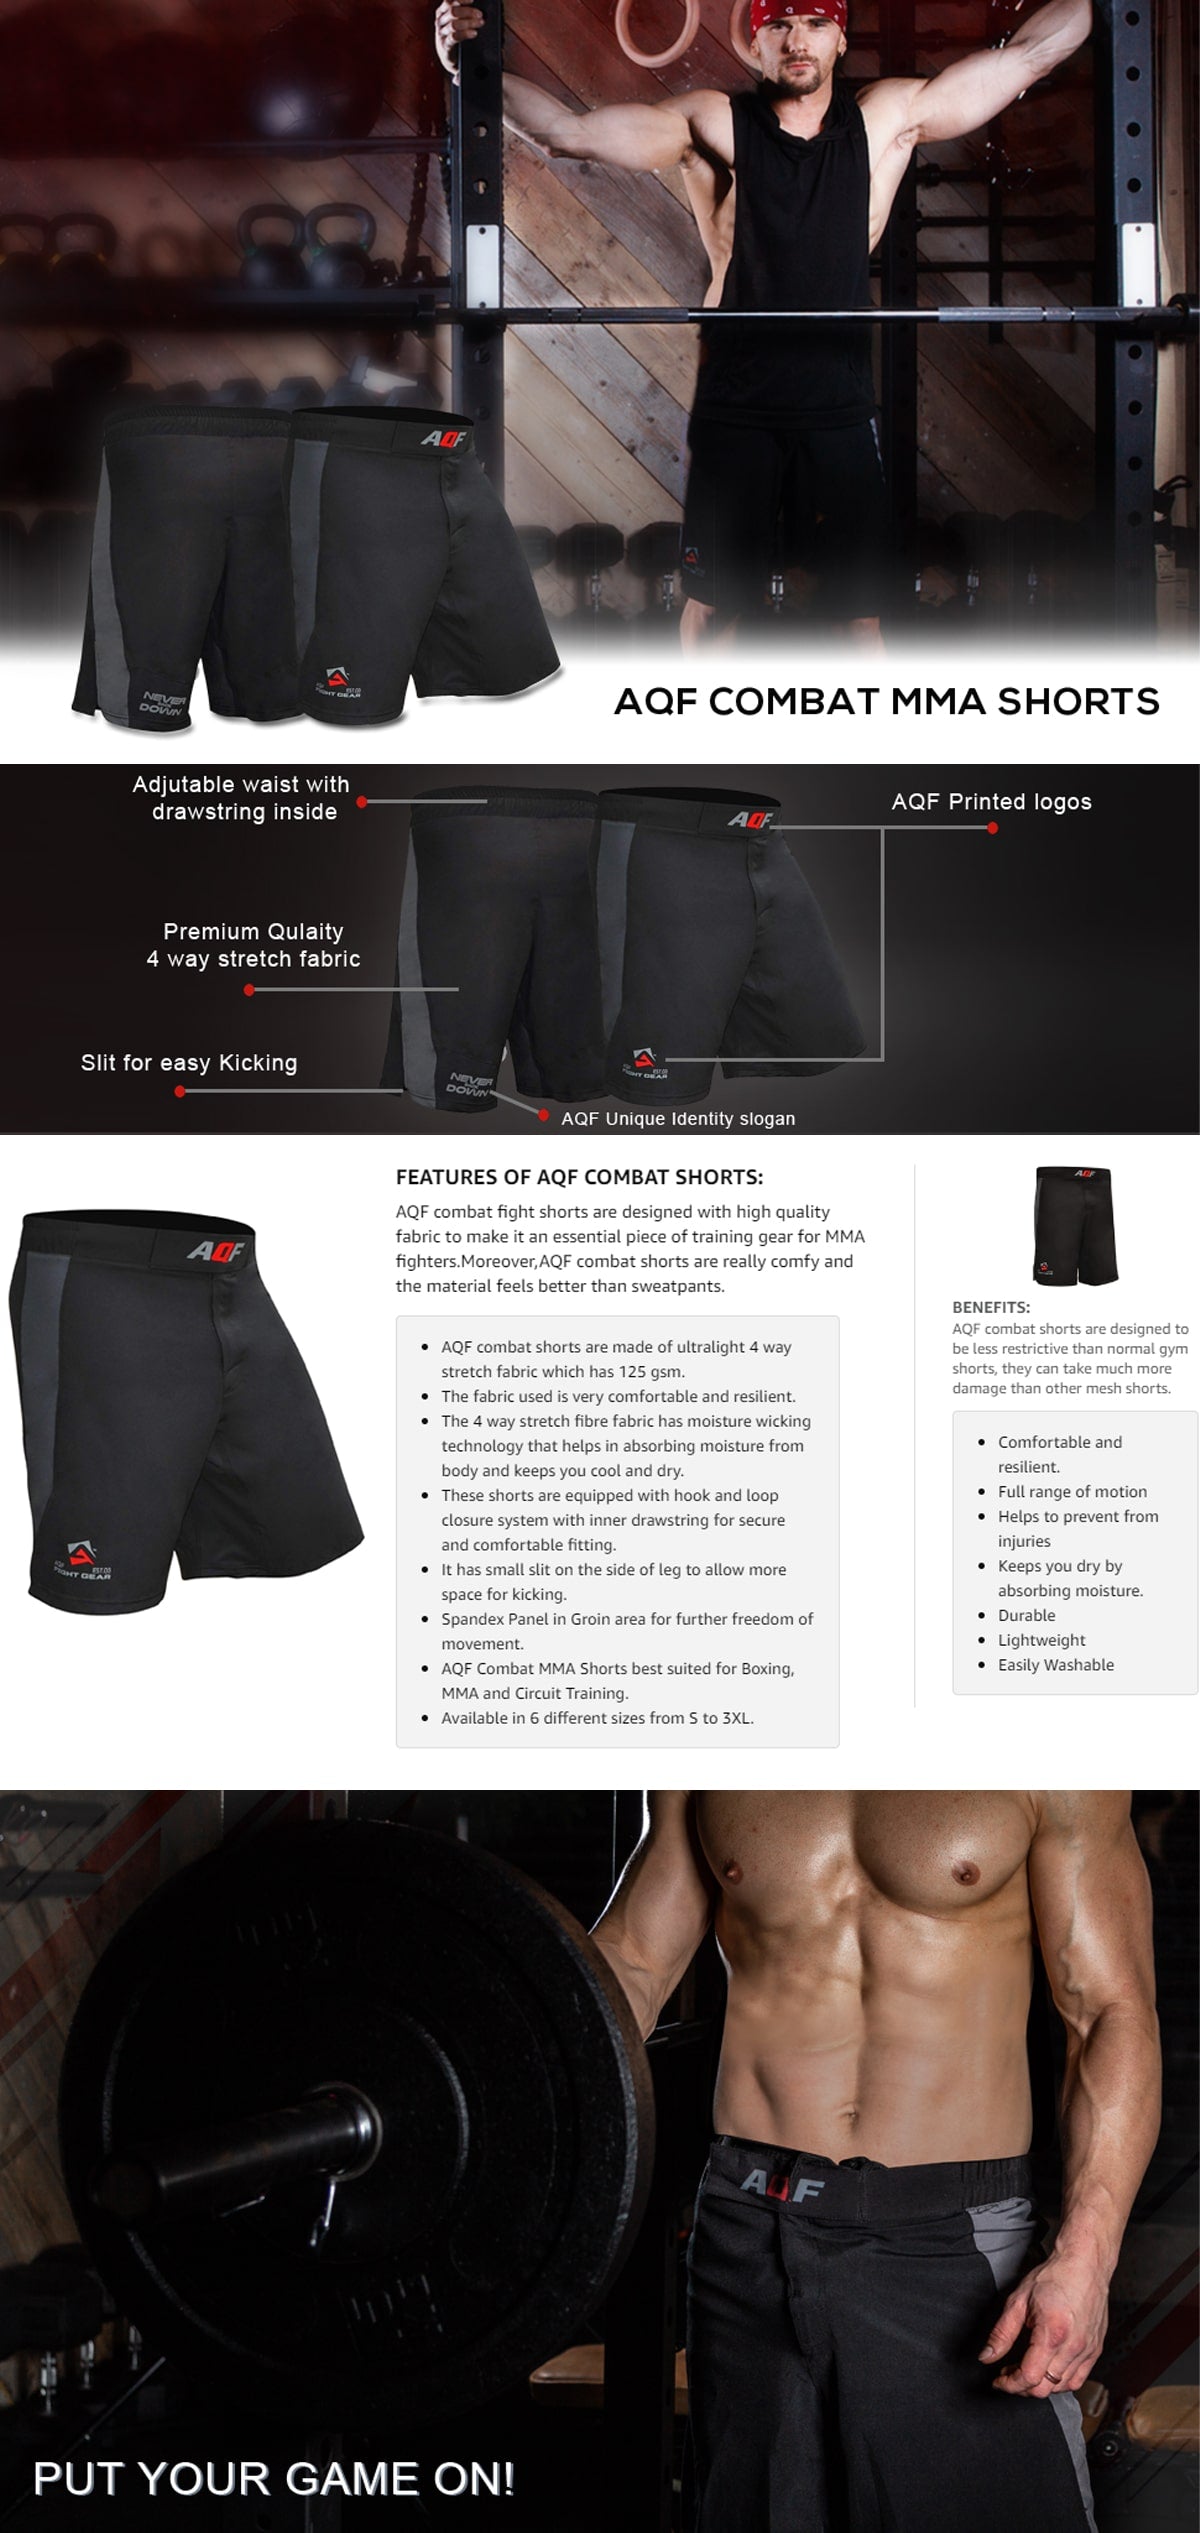 Features of AQF Combat Shorts